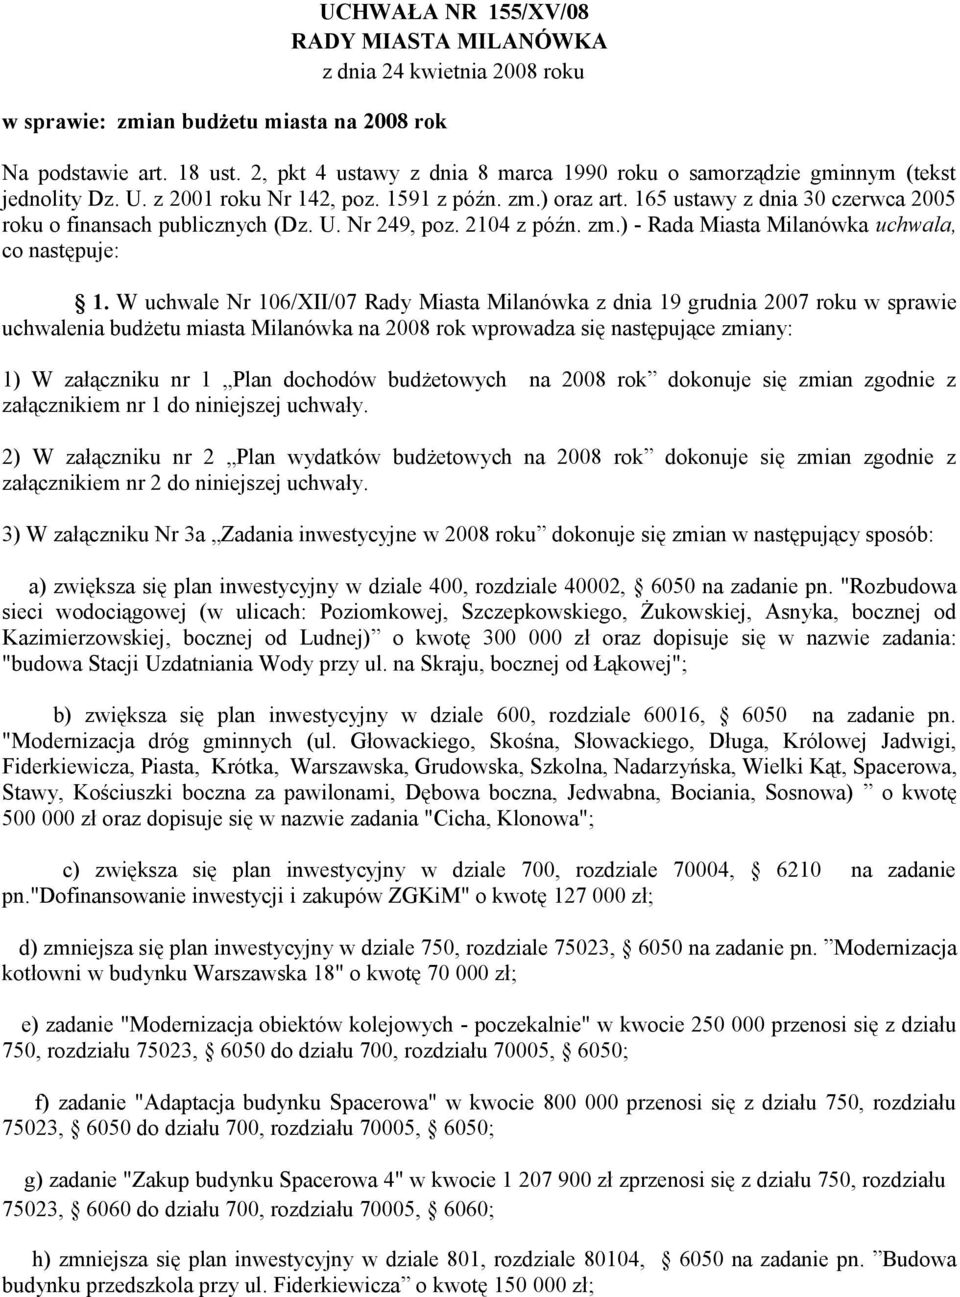 165 ustawy z dnia 30 czerwca 2005 roku o finansach publicznych (Dz. U. Nr 249, poz. 2104 z późn. zm.) - Rada Miasta Milanówka uchwala, co następuje: 1.